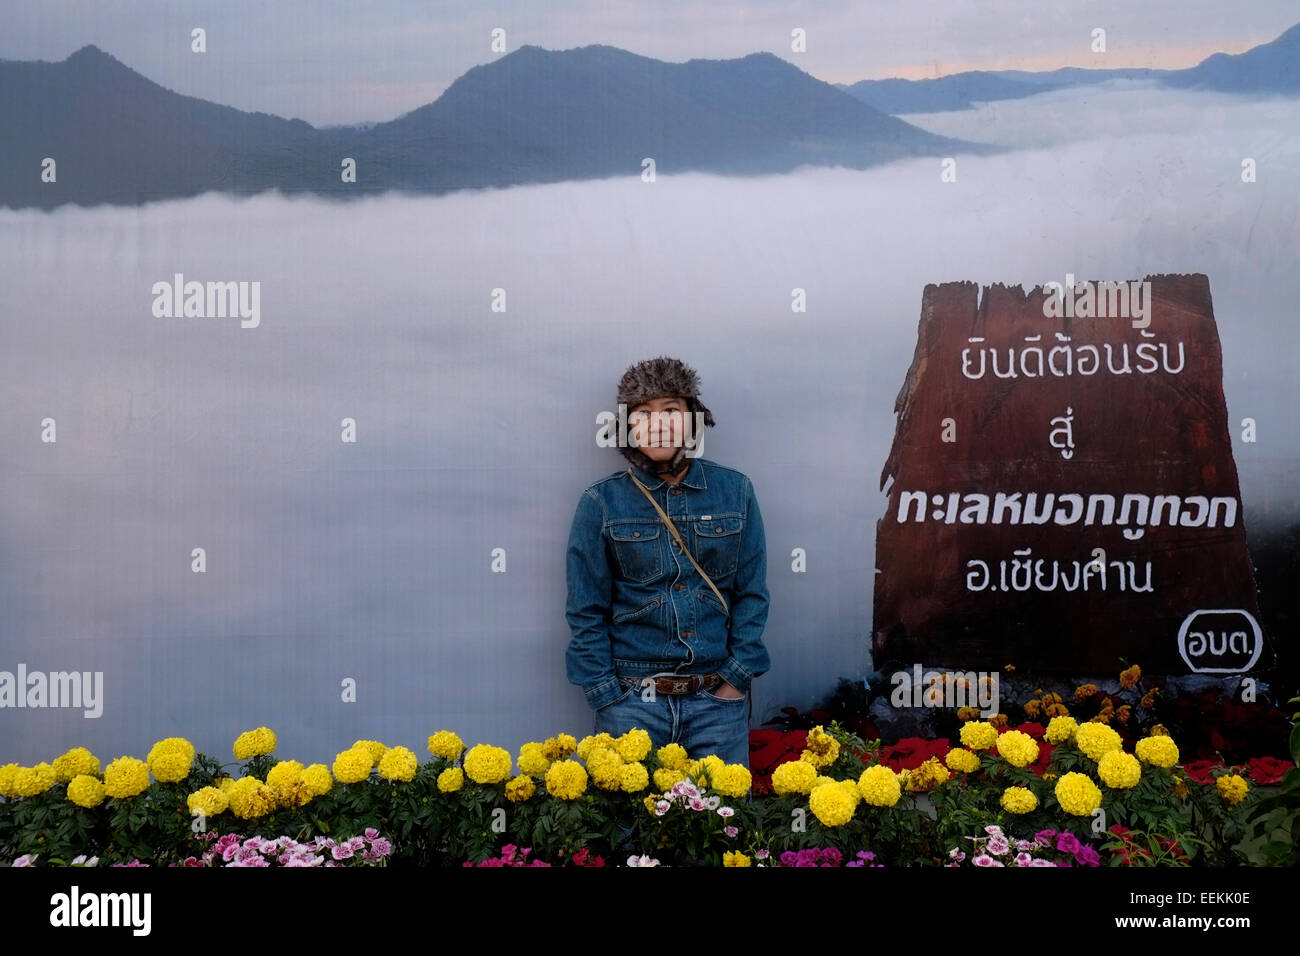 Local Thai visitatore in posa di fronte a grandi poster raffigurante il mare di nebbia nella parte superiore dell'unità PHU Tok mountain si trova al centro di Bueng Kan provincia nell'estremità nord-orientale di Isan, a nord-est della Thailandia. Foto Stock